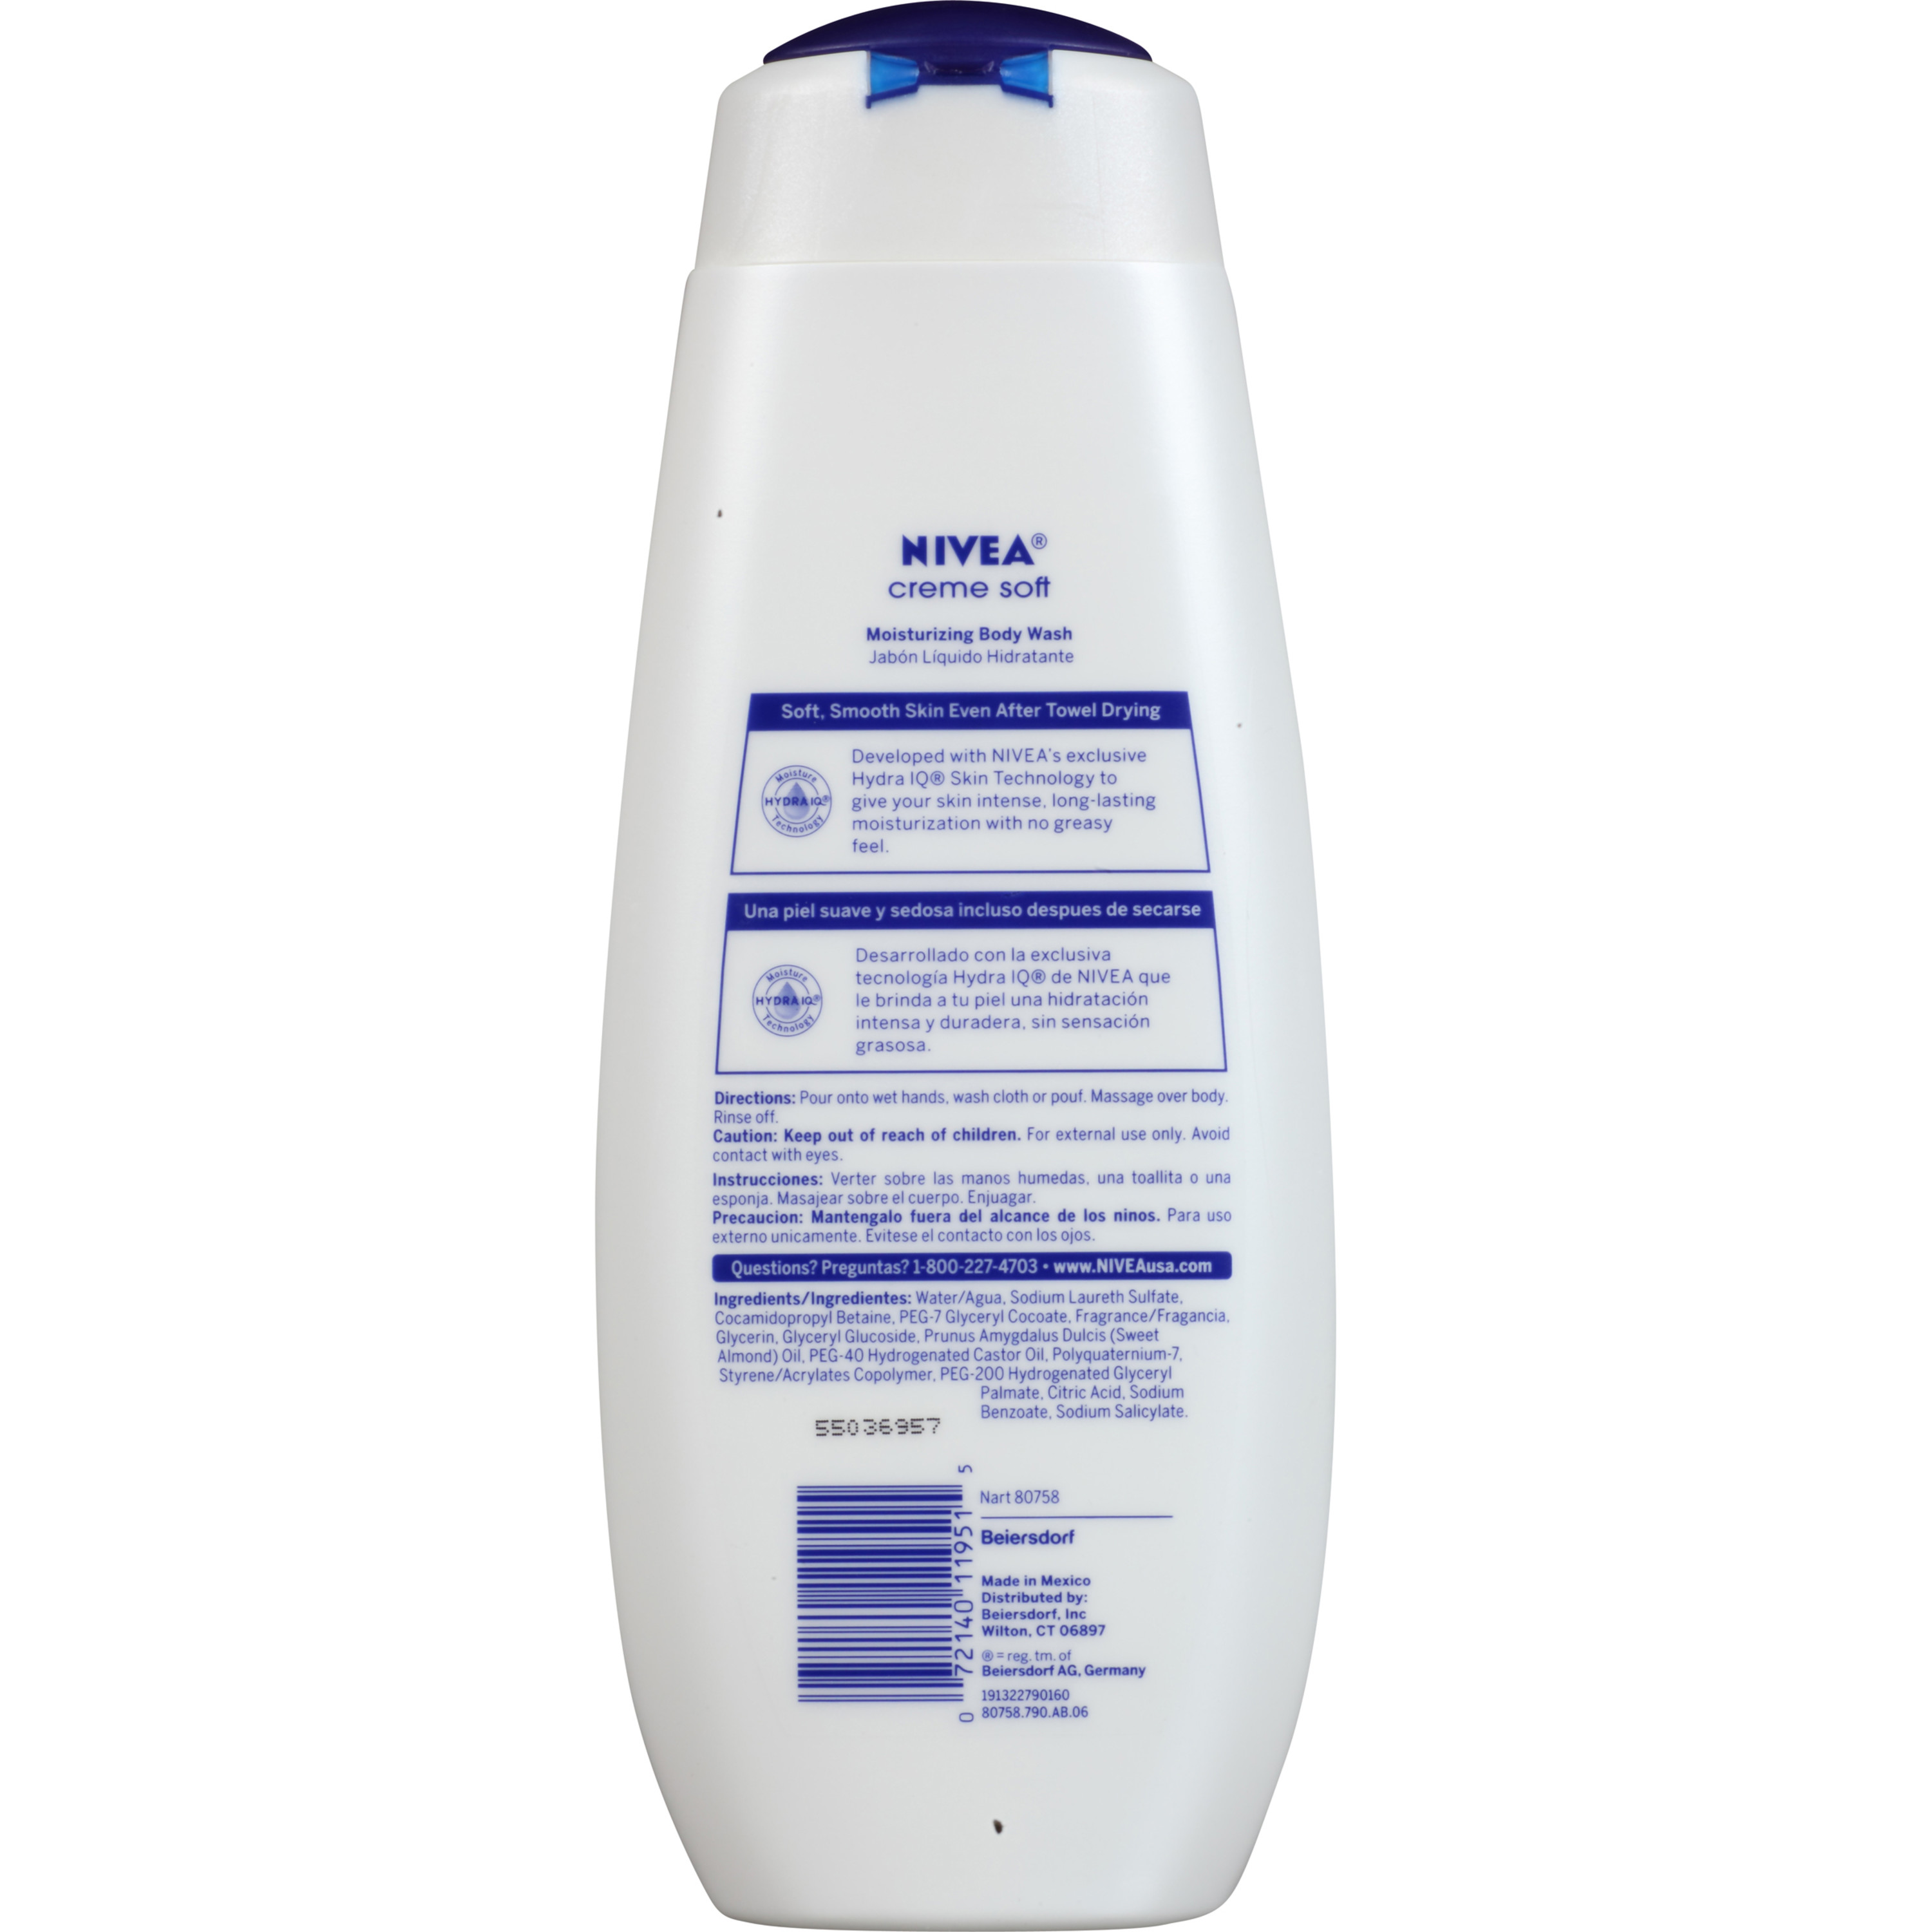 NIVEA Creme Soft Moisturizing Body Wash 16.9 fl. oz. - image 3 of 3